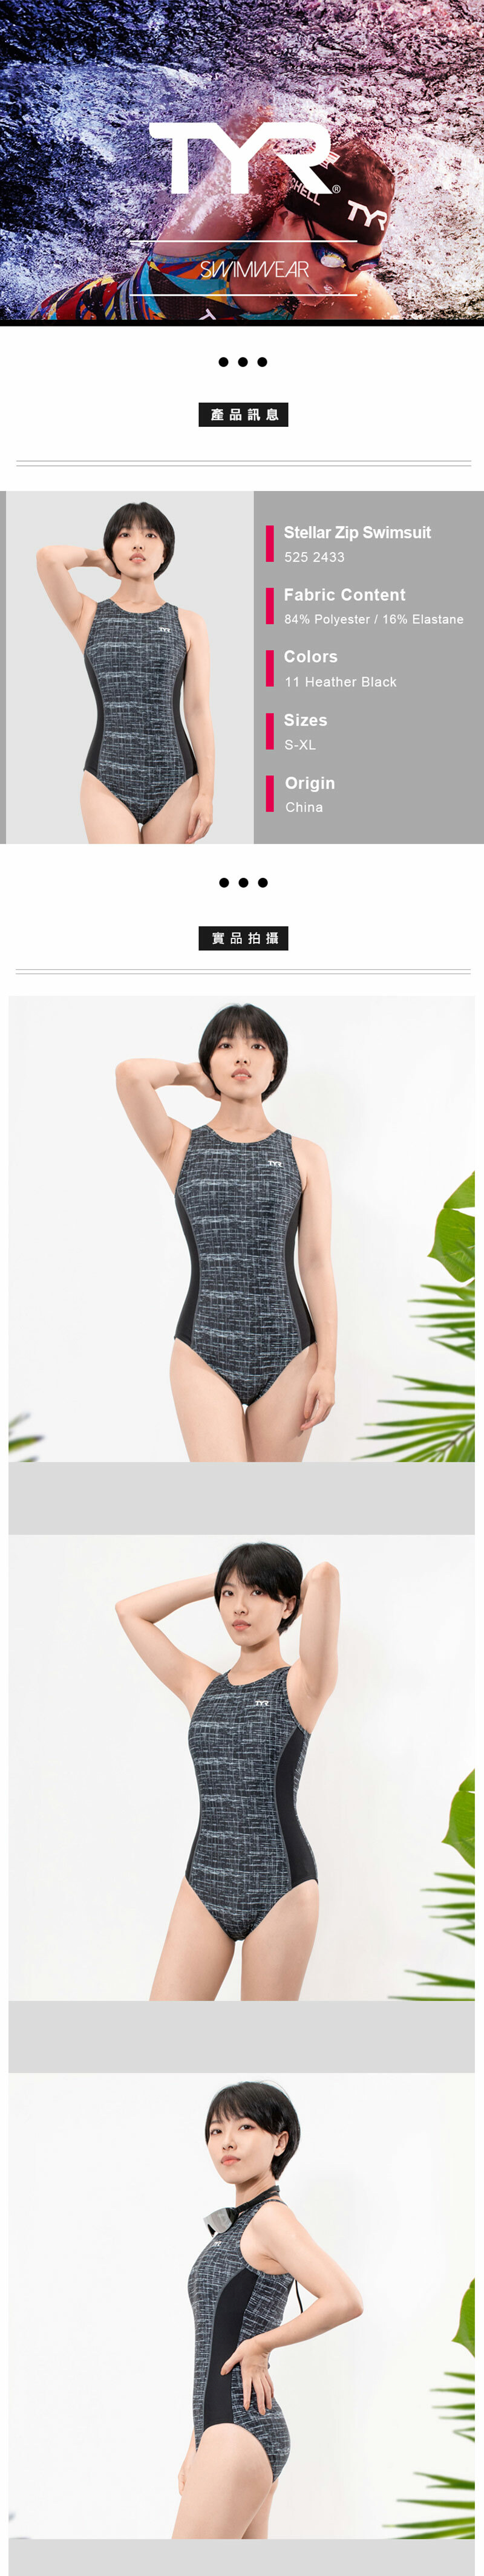 【美國TYR】修身款拉鍊式連身泳裝 泳衣 Stellar Zip Swimsuit